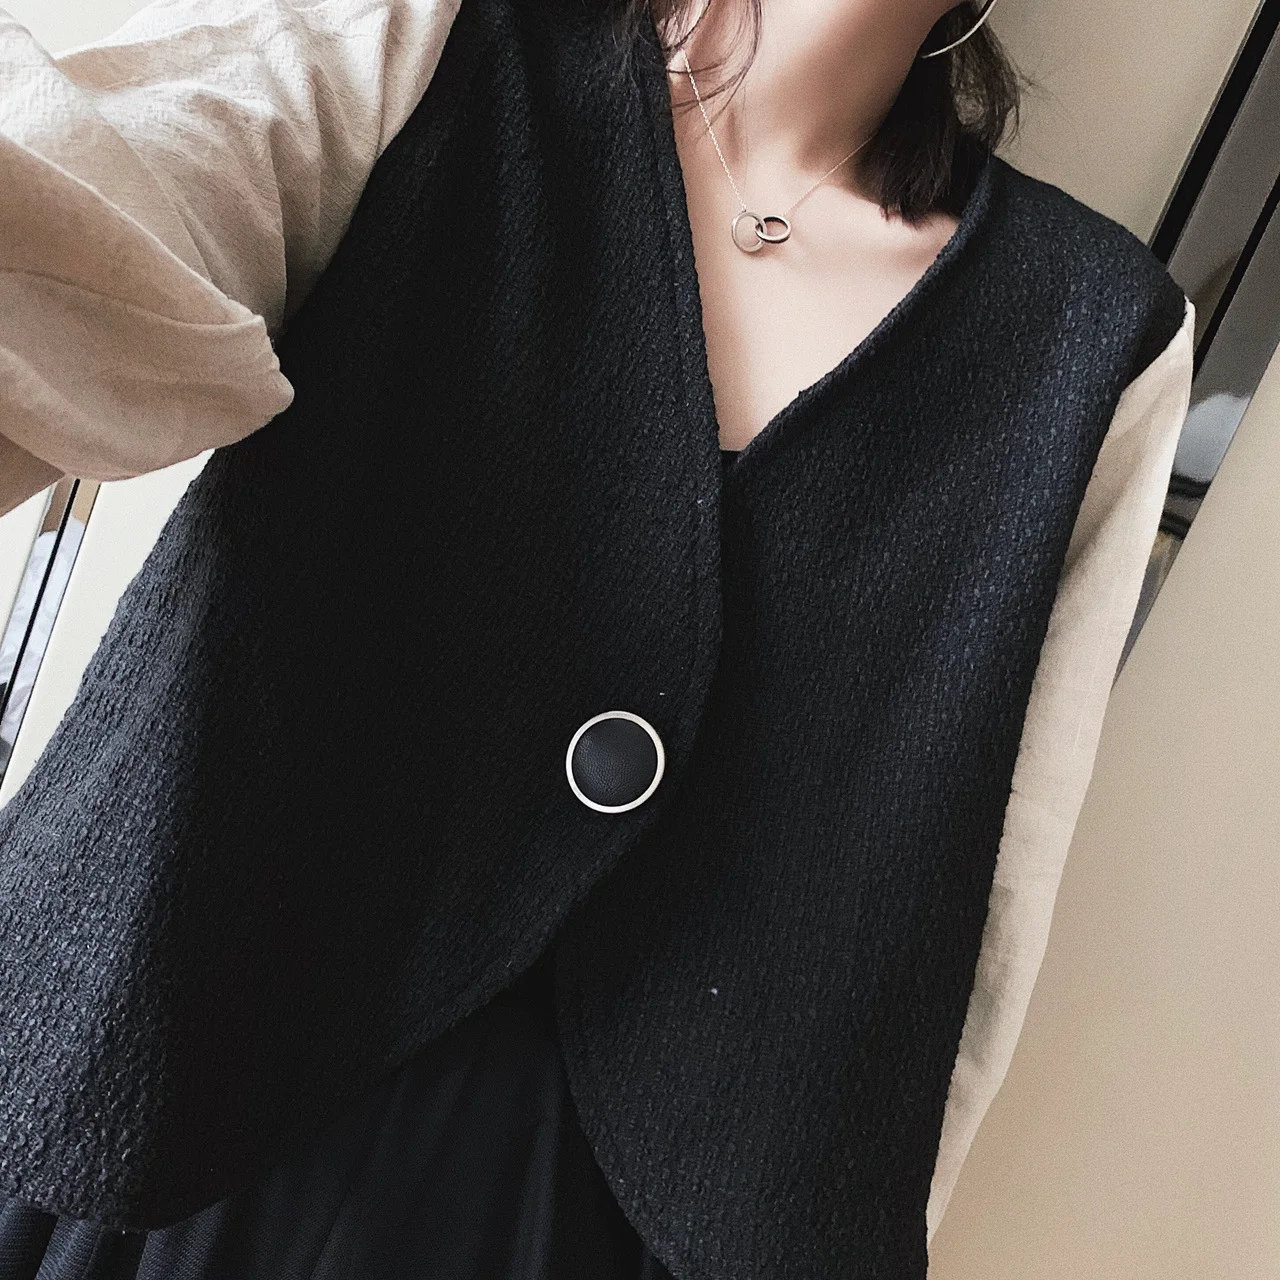 DEAT 2019 новая весенняя модная женская одежда с v-образным вырезом, плиссированные рукава, лоскутные тонкие пуговицы, японский стиль, короткая